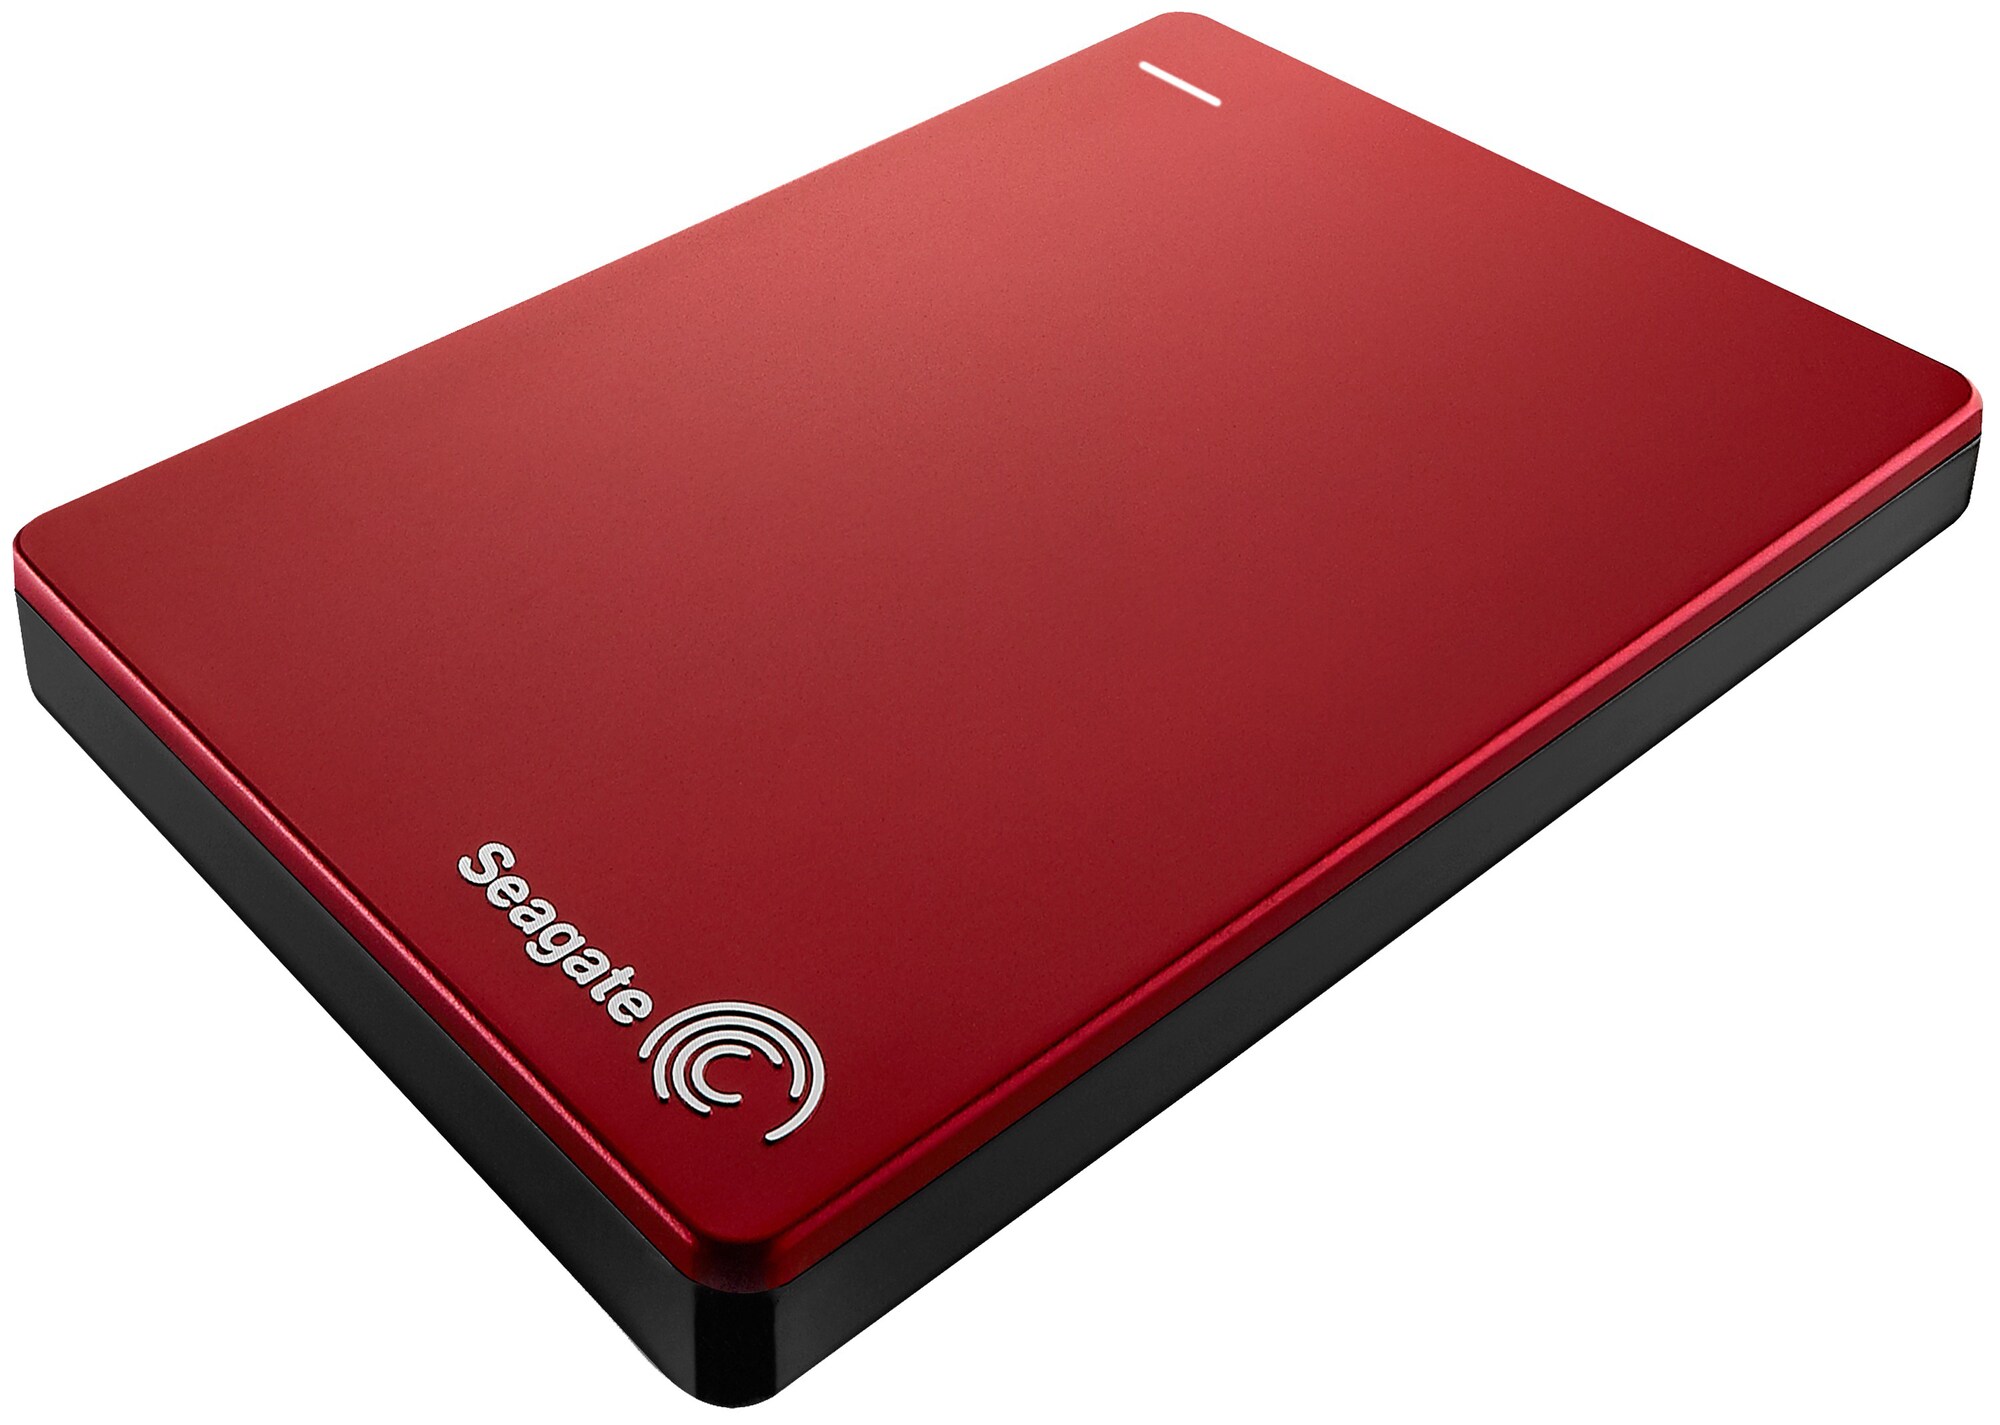 Seagate Slim Backup Plus 2 TB ekstern harddisk (rød) - Elkjøp